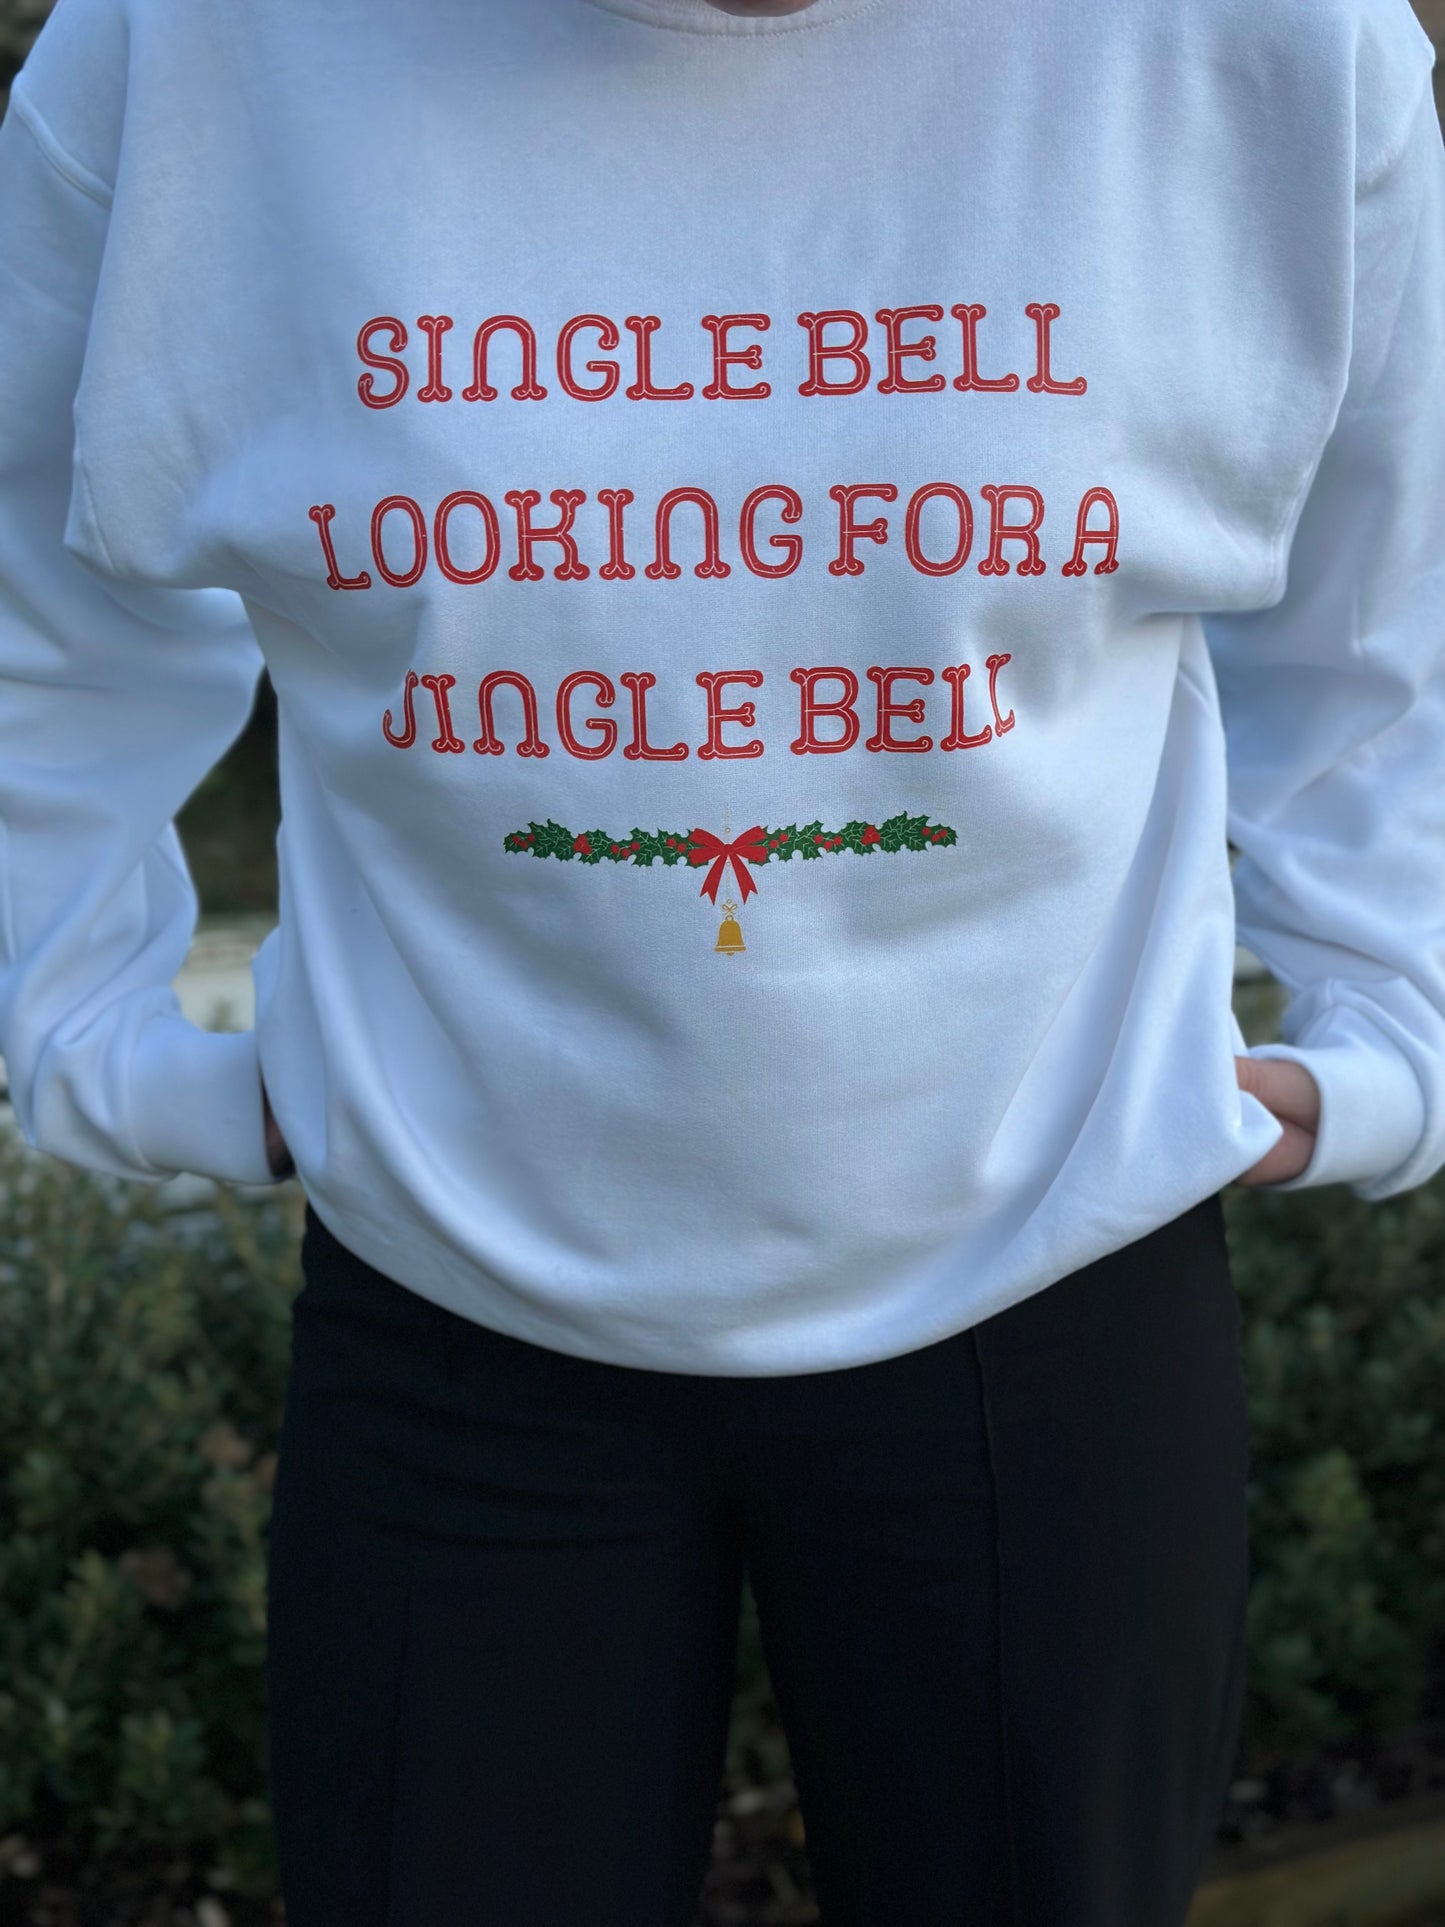 "Single bell" sweatshirt.